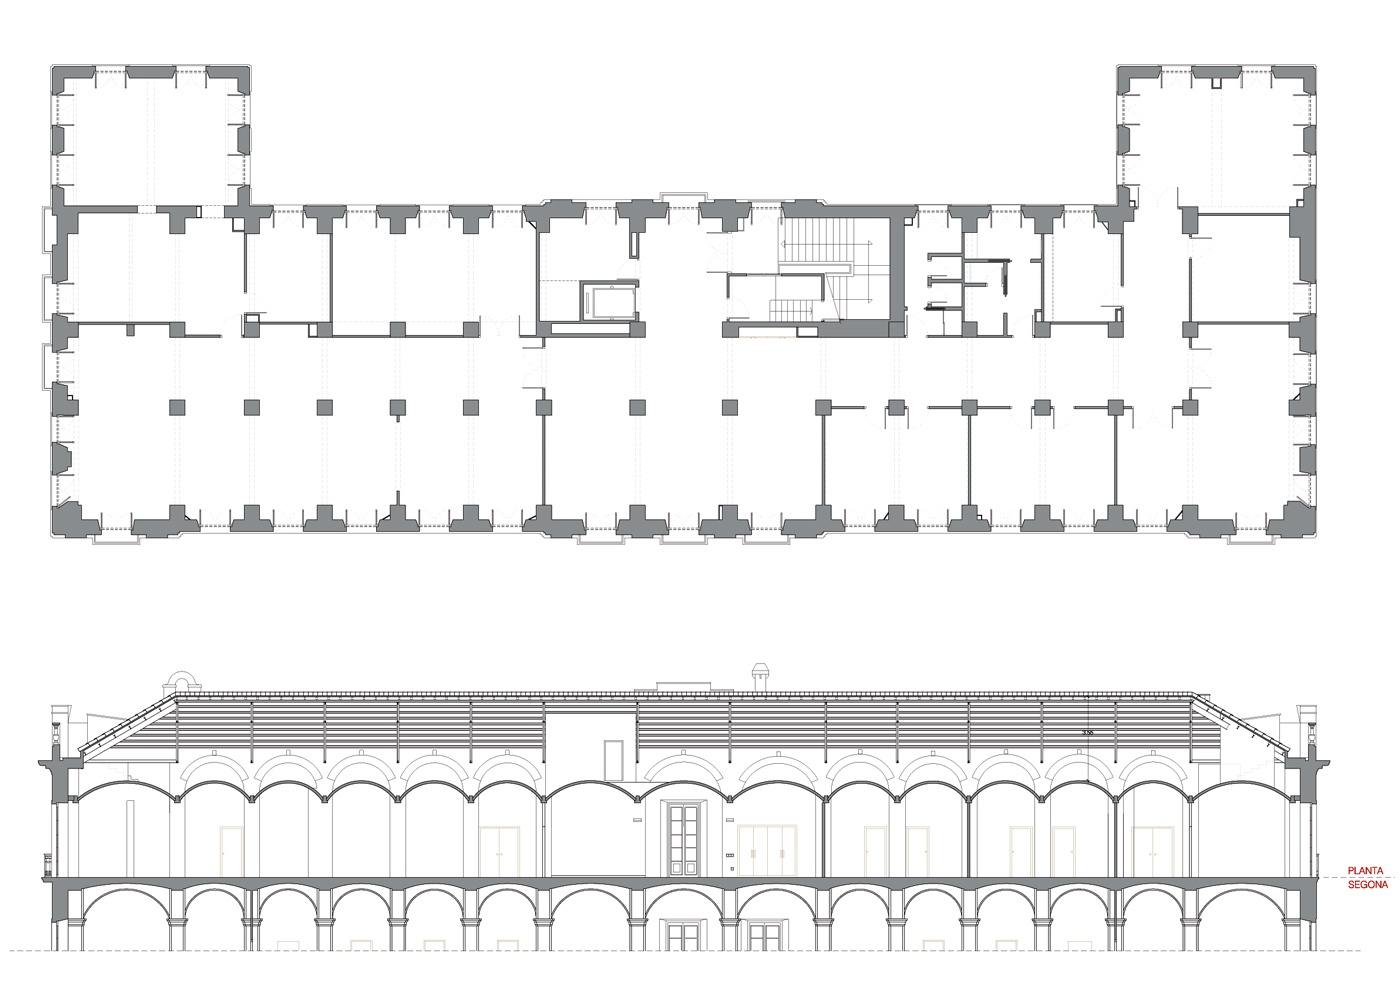 Planta estat actual. Projecte de reforma i disseny 3D: 2013 - Formació d’un Viver d’empreses a la planta segona de l’Edifici Xifré d’Arenys de Mar